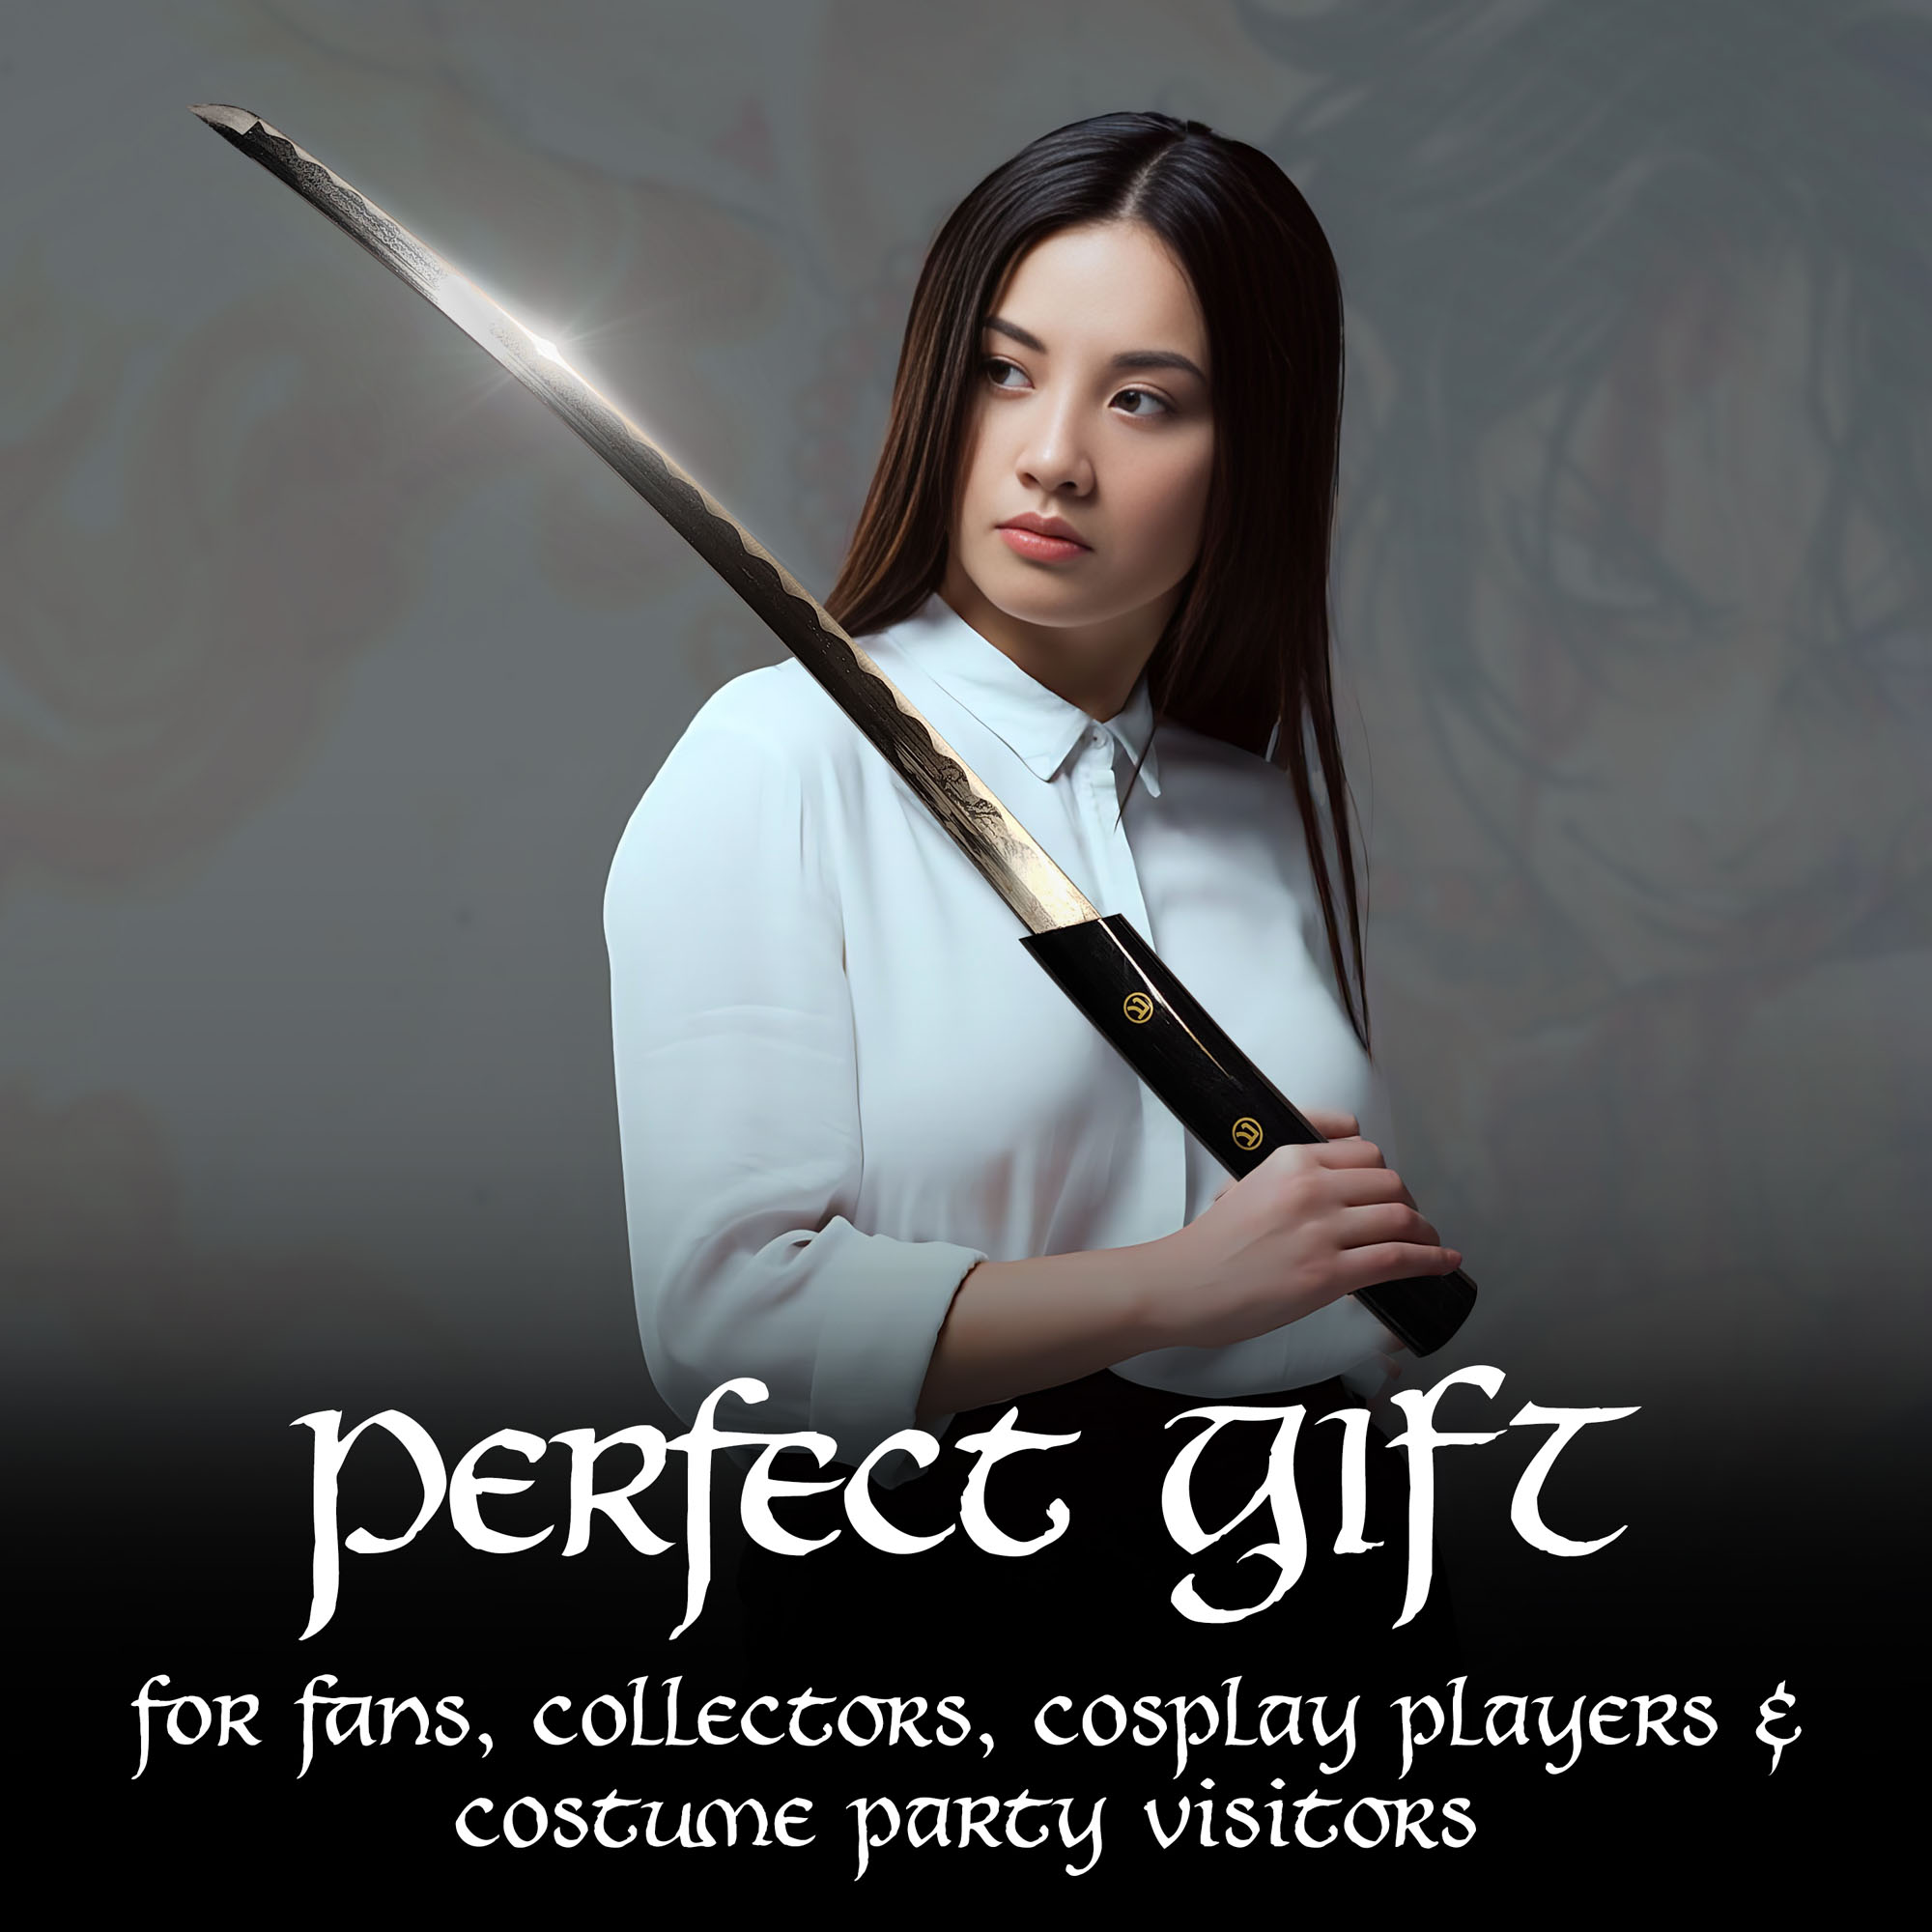 O Ren Ishii Sword, Handforged, Sharp Blade